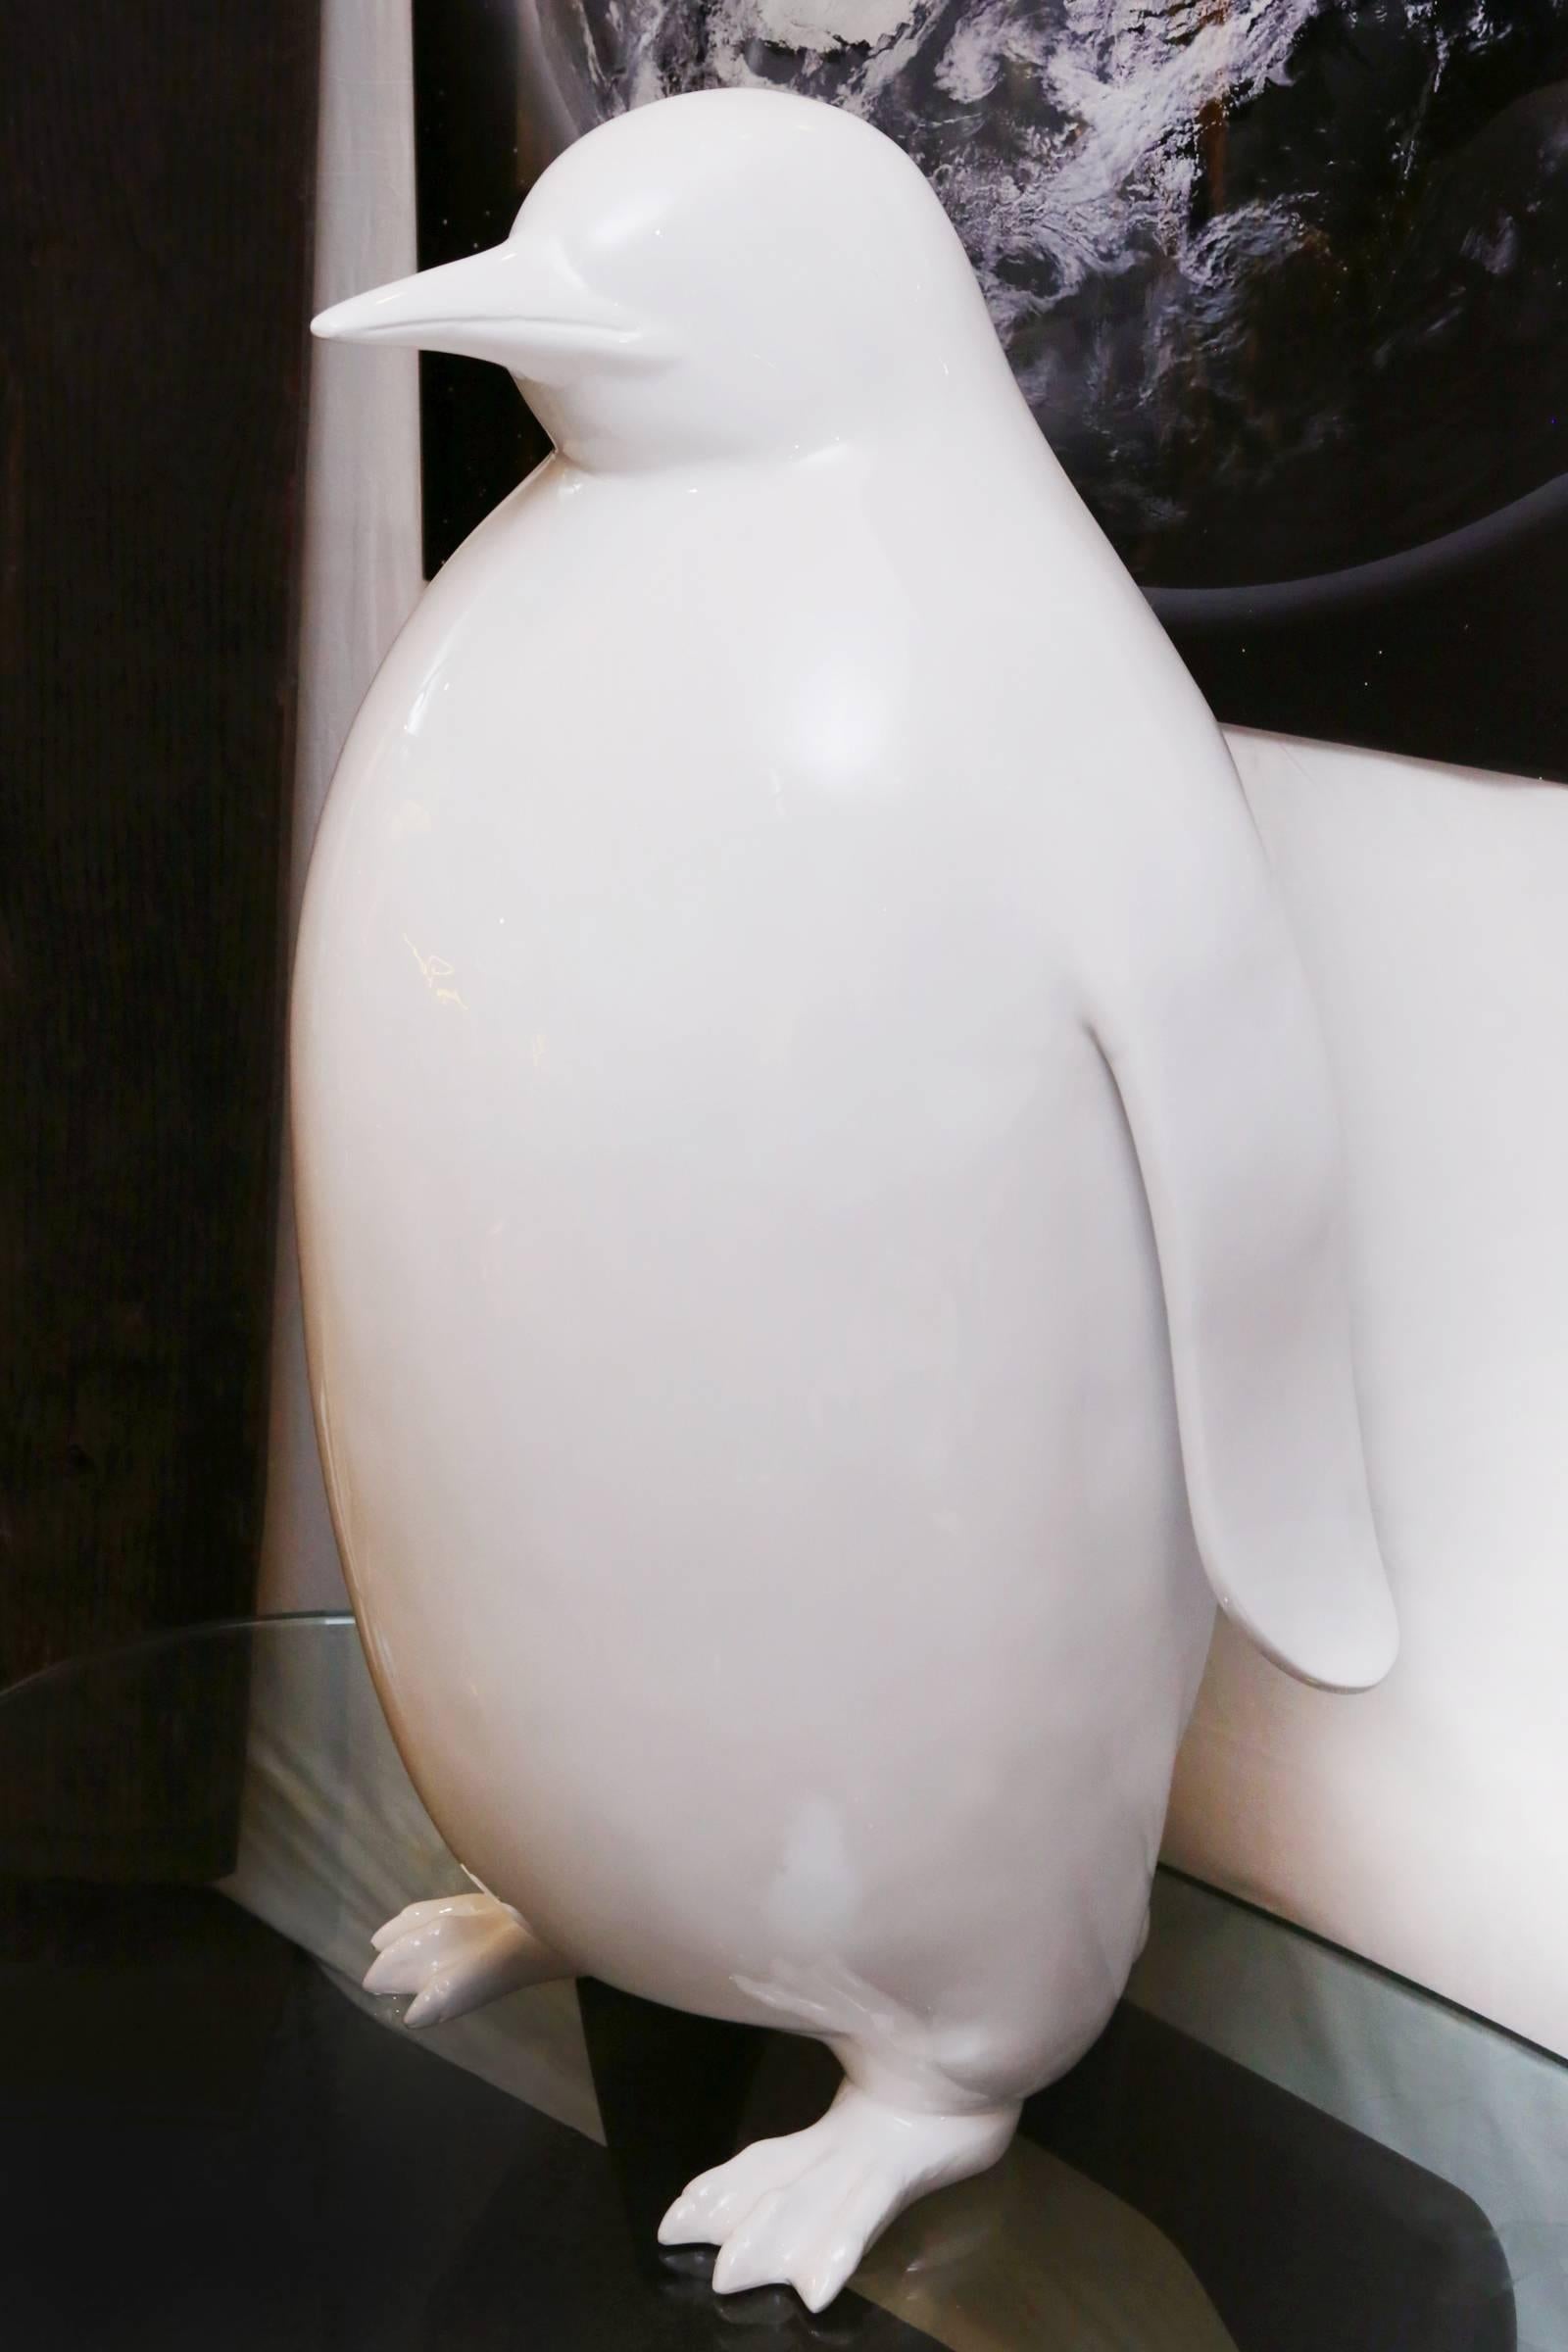 penguin sculptures